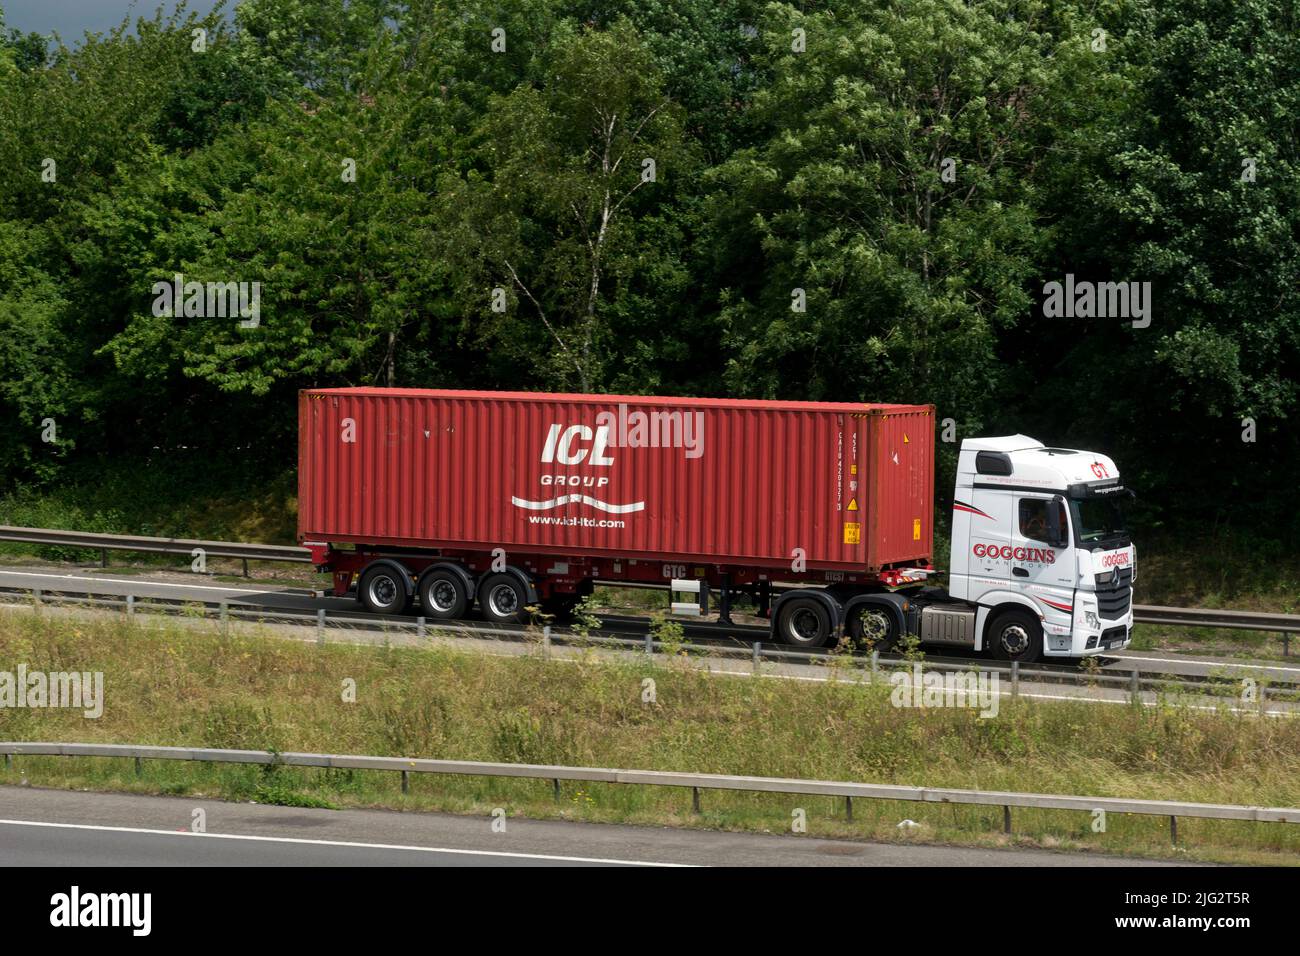 ICL Group Transportcontainer von Goggins Transport Trury, Junction 15 Slip Road, M40 Autobahn, Warwickshire, Großbritannien Stockfoto